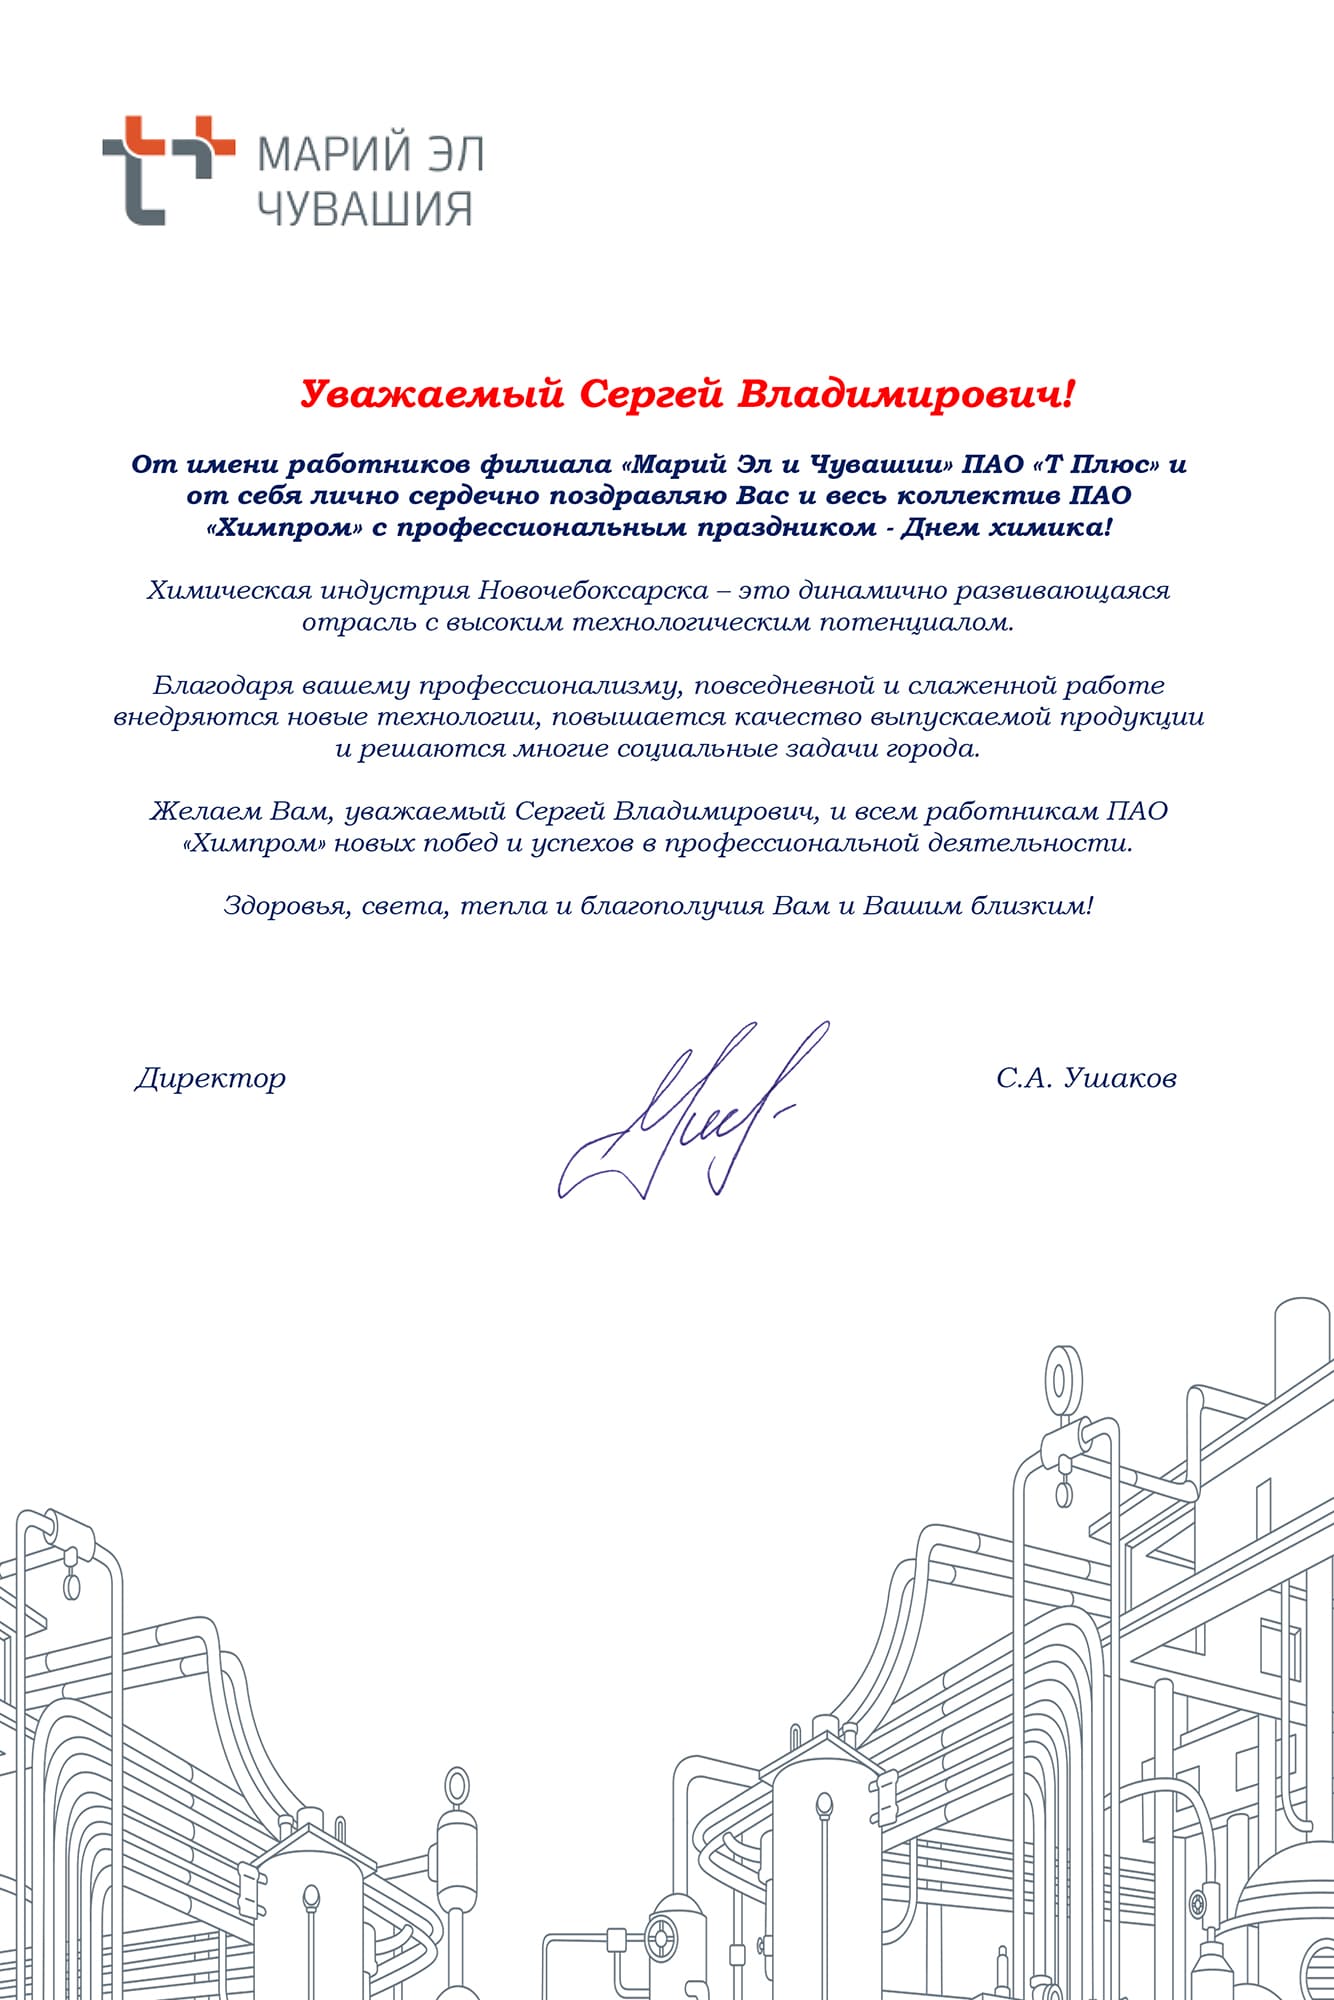 Поздравление Химпрому